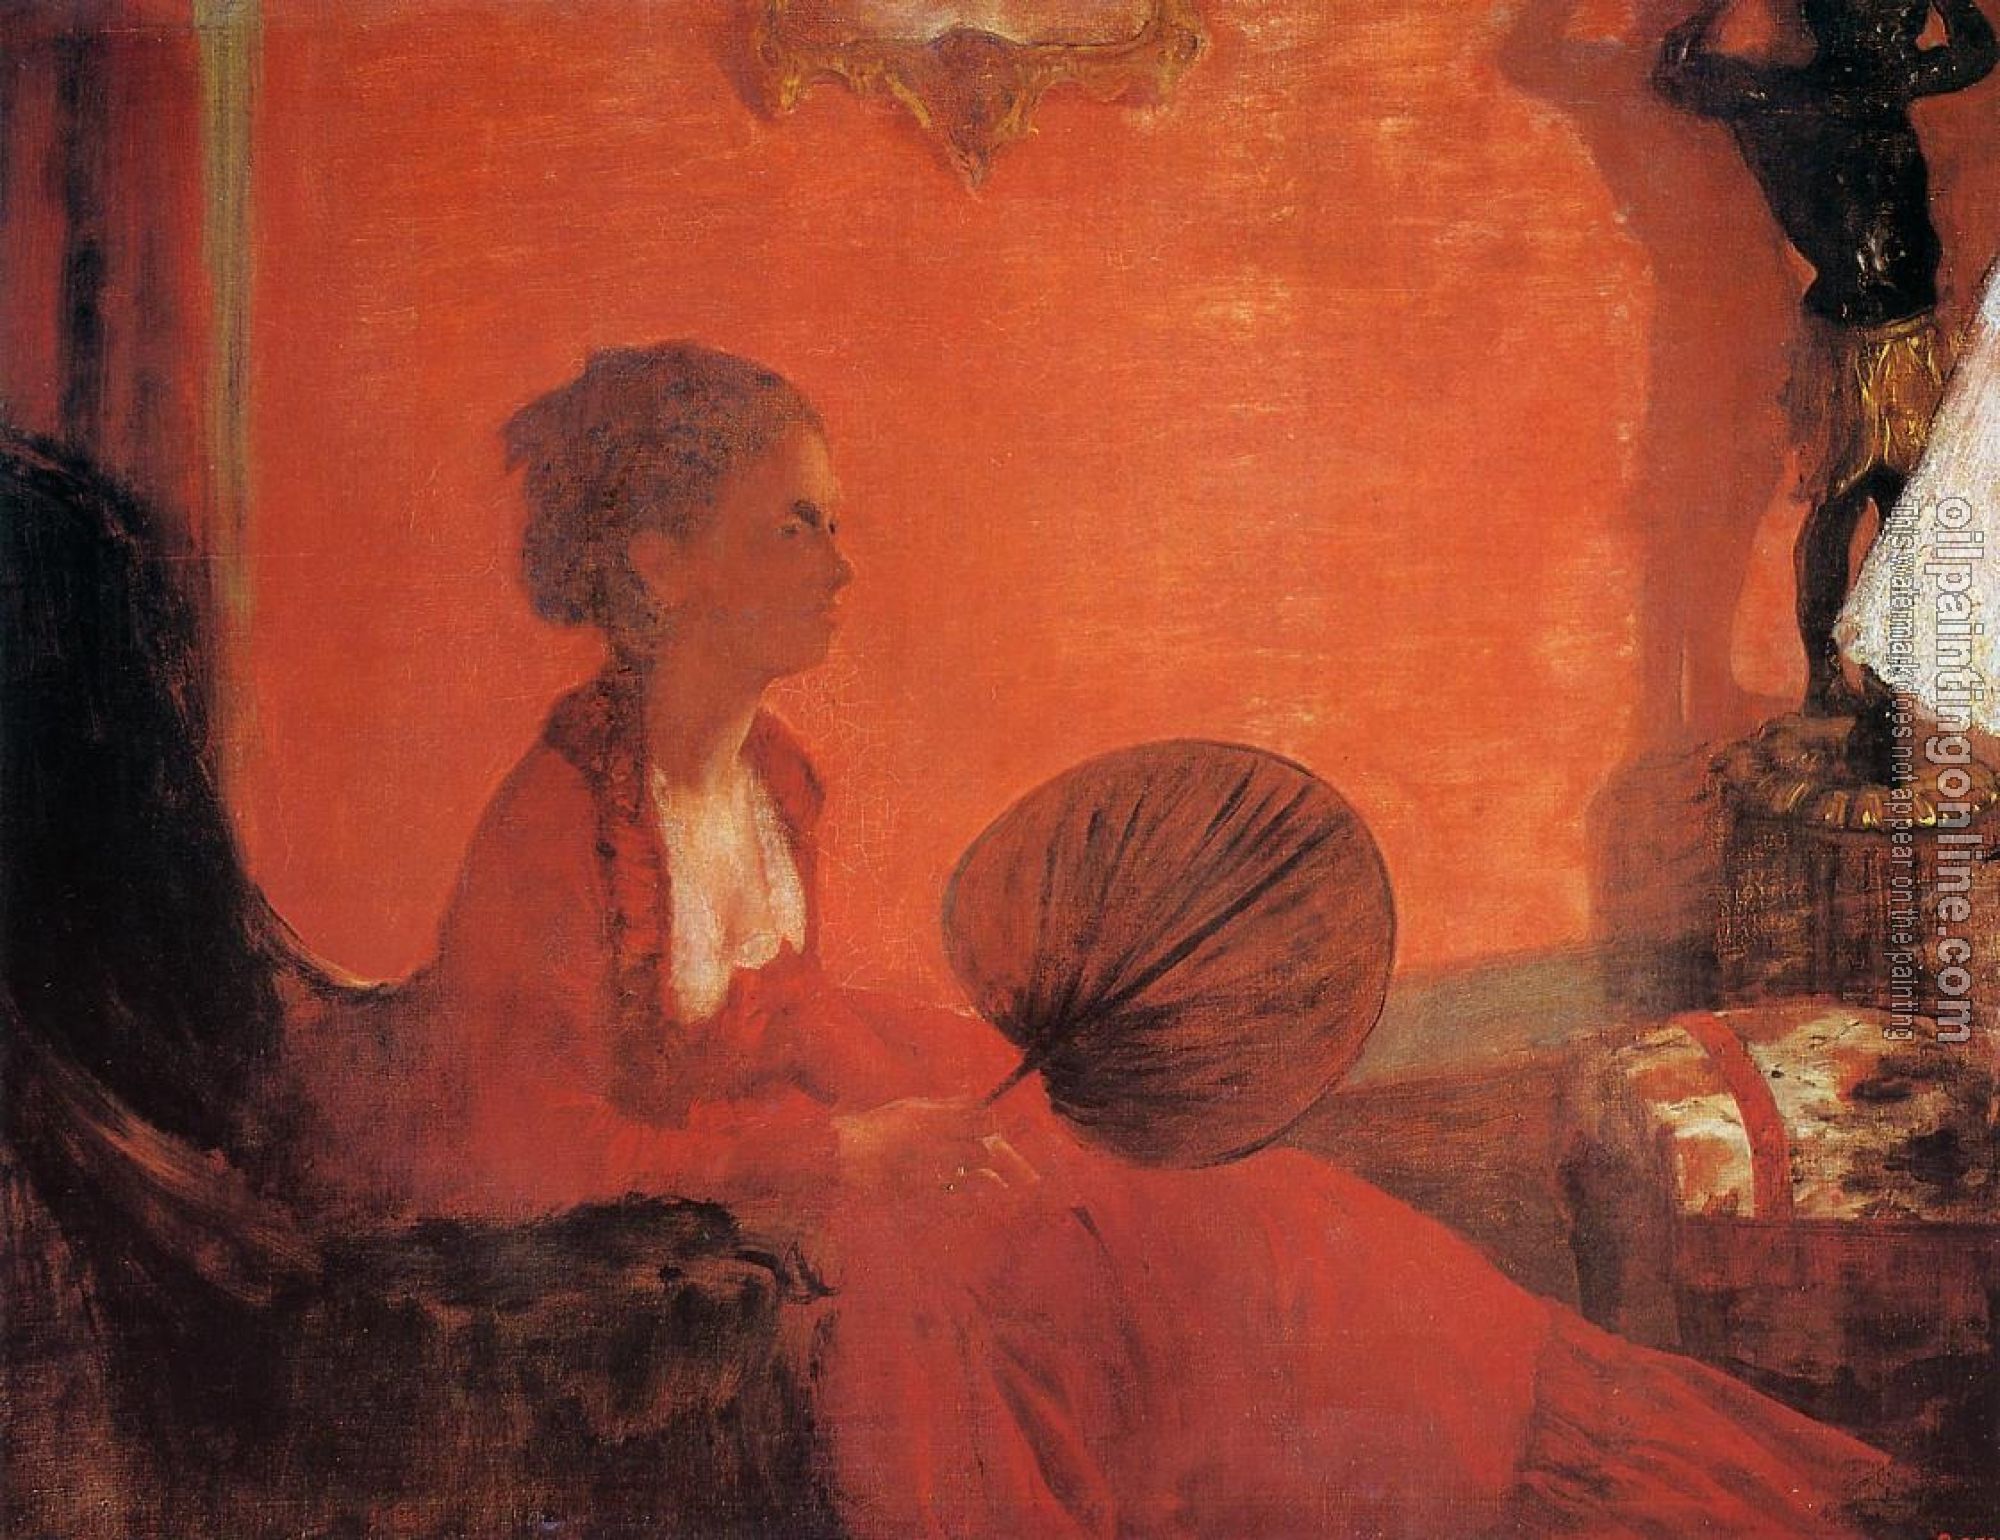 Degas, Edgar - Madame Camus with a Fan